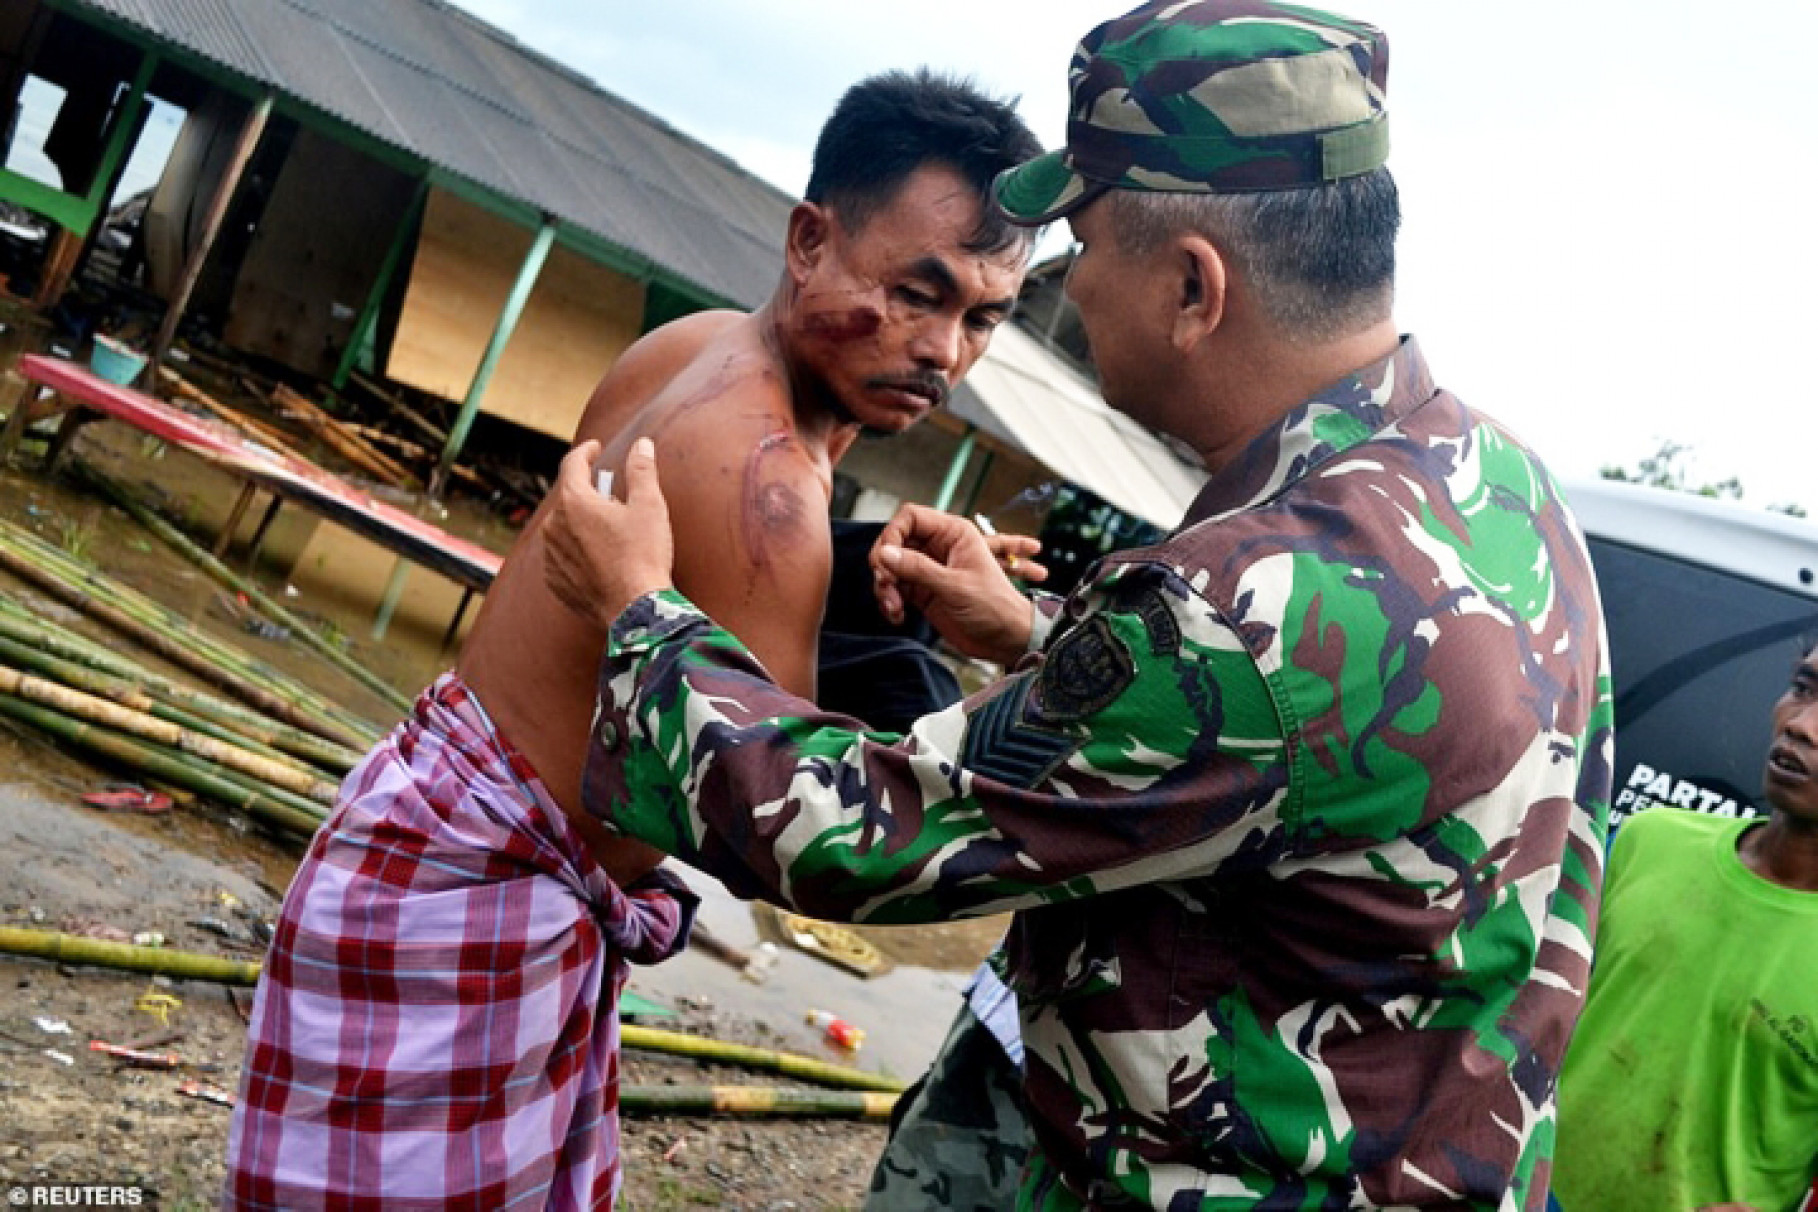 Giới chức Indonesia đã lập tức điều động các đội phản ứng khẩn cấp đến vùng thiên tai để tiến hành công tác tìm kiếm và cứu nạn, sơ tán người dân đến nơi an toàn. Trang thiết bị hạng nặng đang được chuyển đến những vùng chịu thiệt hại nghiêm trọng nhất để hỗ trợ tìm kiếm người sống sót. Những trại lánh nạn dã chiến đang được thiết lập.

